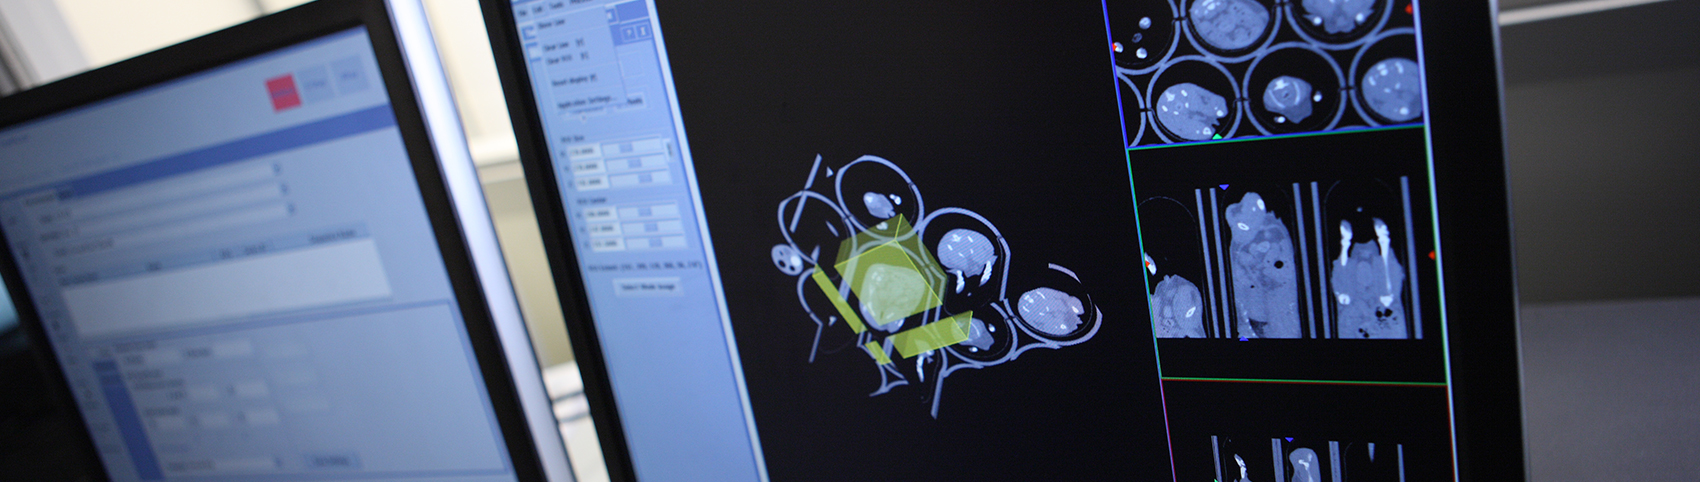 コンピュータの画面に表示された生物発光画像法の画像